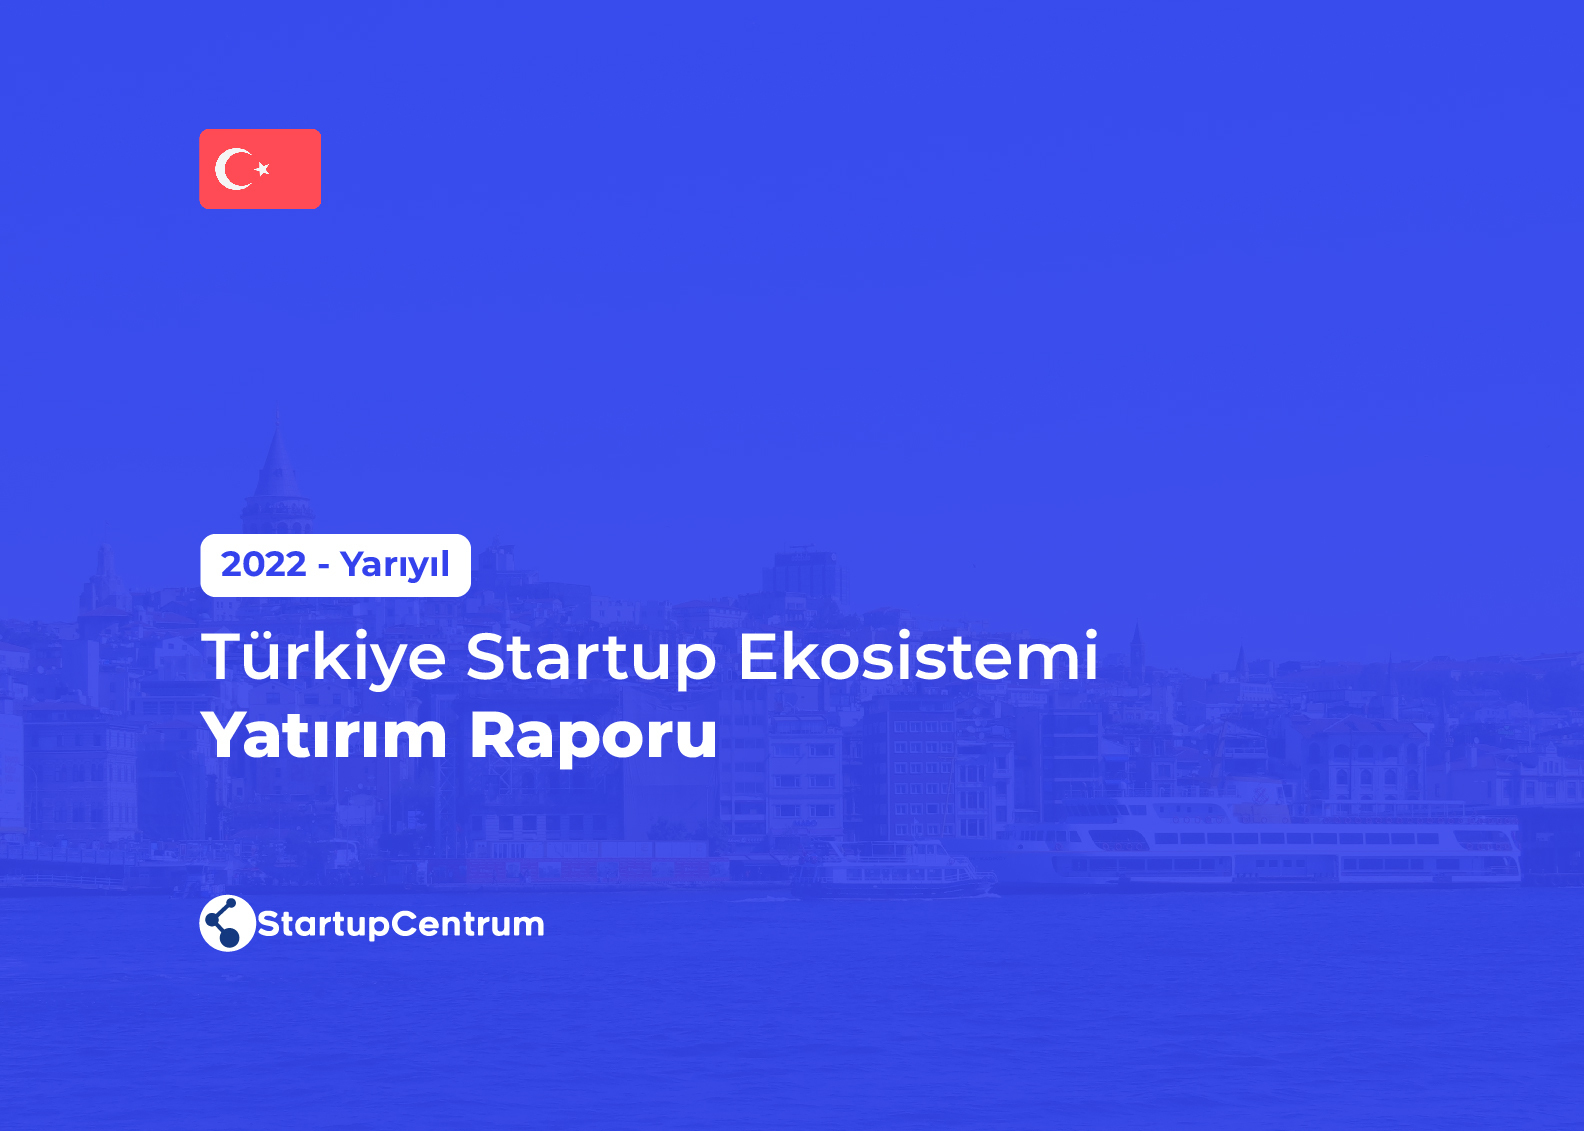 2022 Yarıyıl - Türkiye Startup Ekosistemi Yatırım Raporu Cover Image